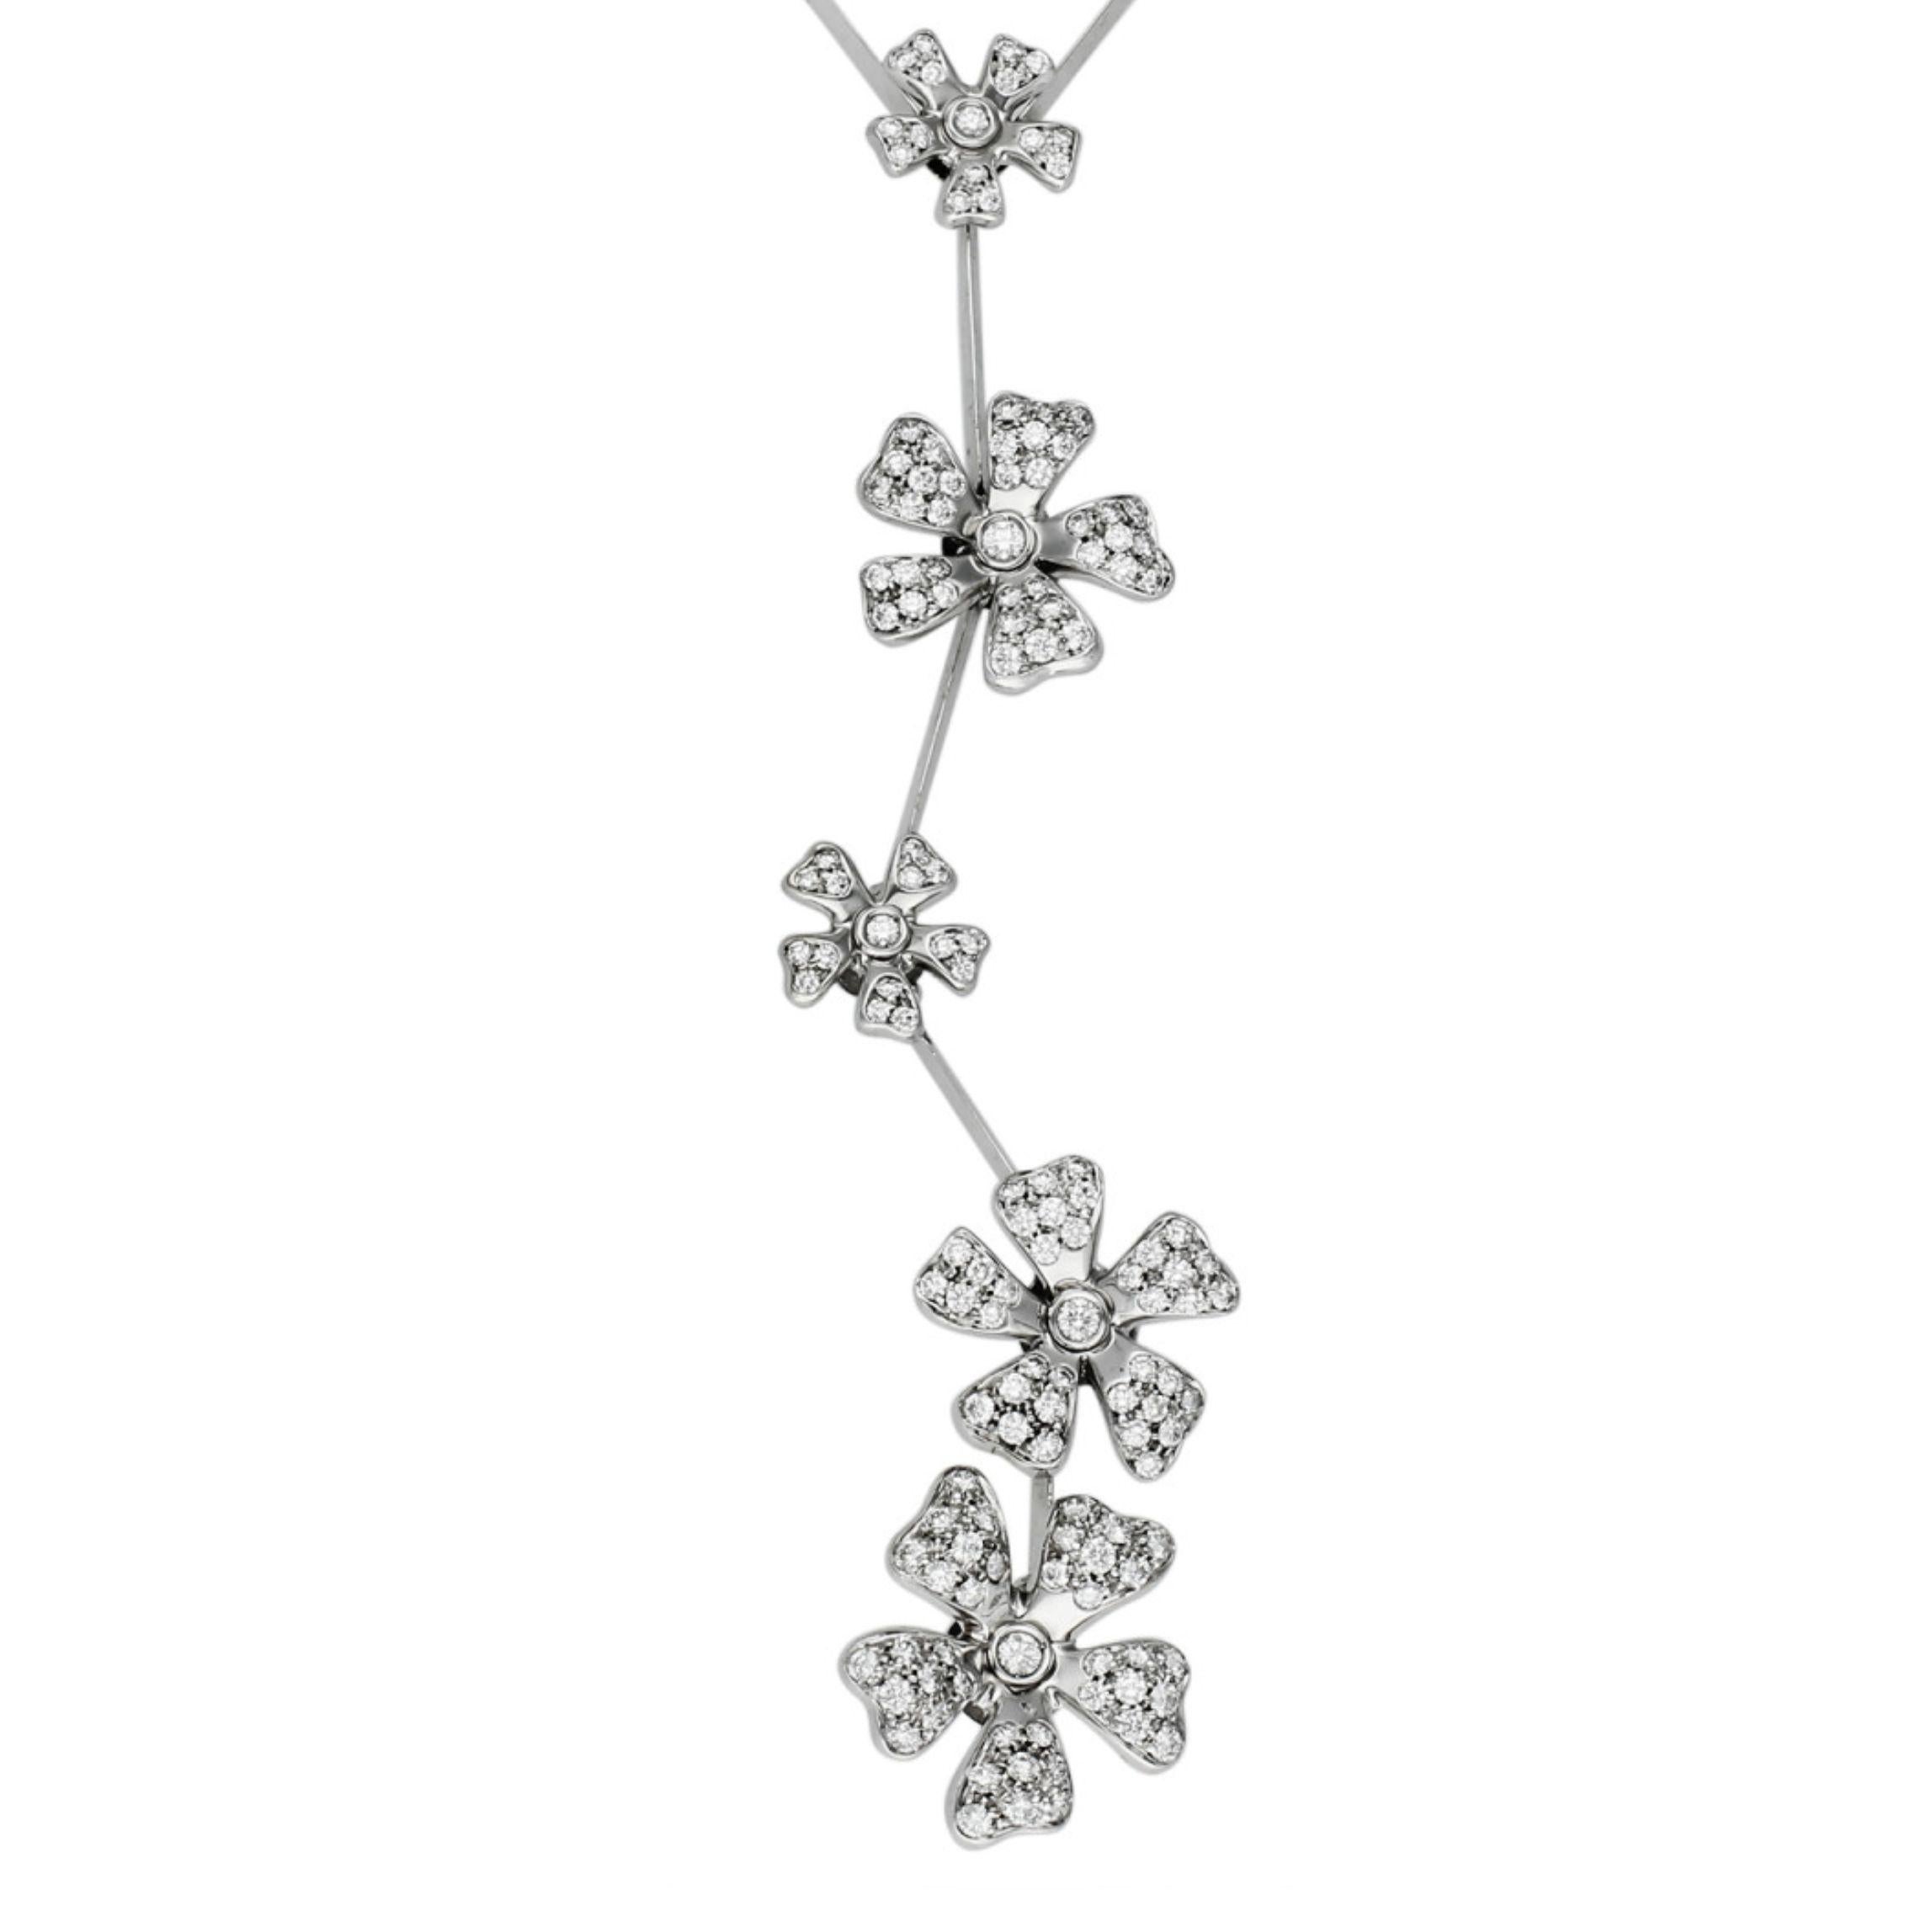 Ce collier de fleurs sauvages De Beers est une pièce exquise à l'allure enchanteresse. Une symphonie de luxe et de Nature, avec une cascade de fleurs incrustées de diamants méticuleusement travaillés, suspendues délicatement le long d'une chaîne à